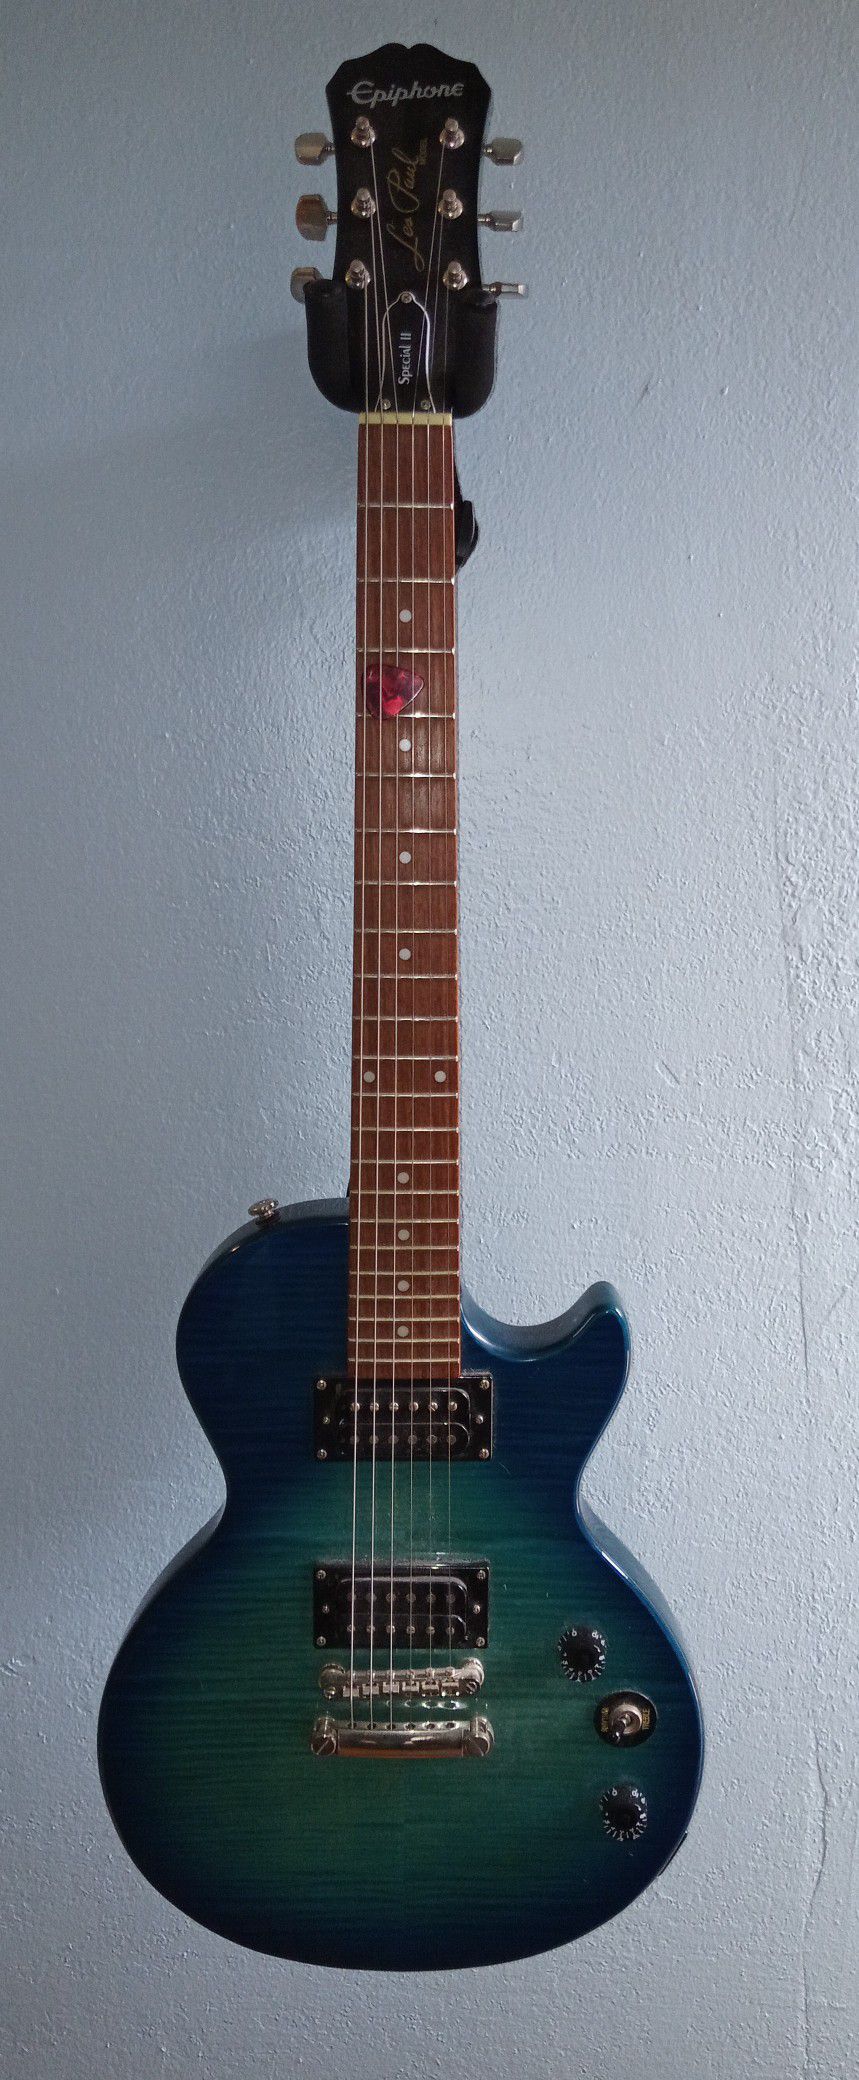 Epiphone Les Paul Special II guitar